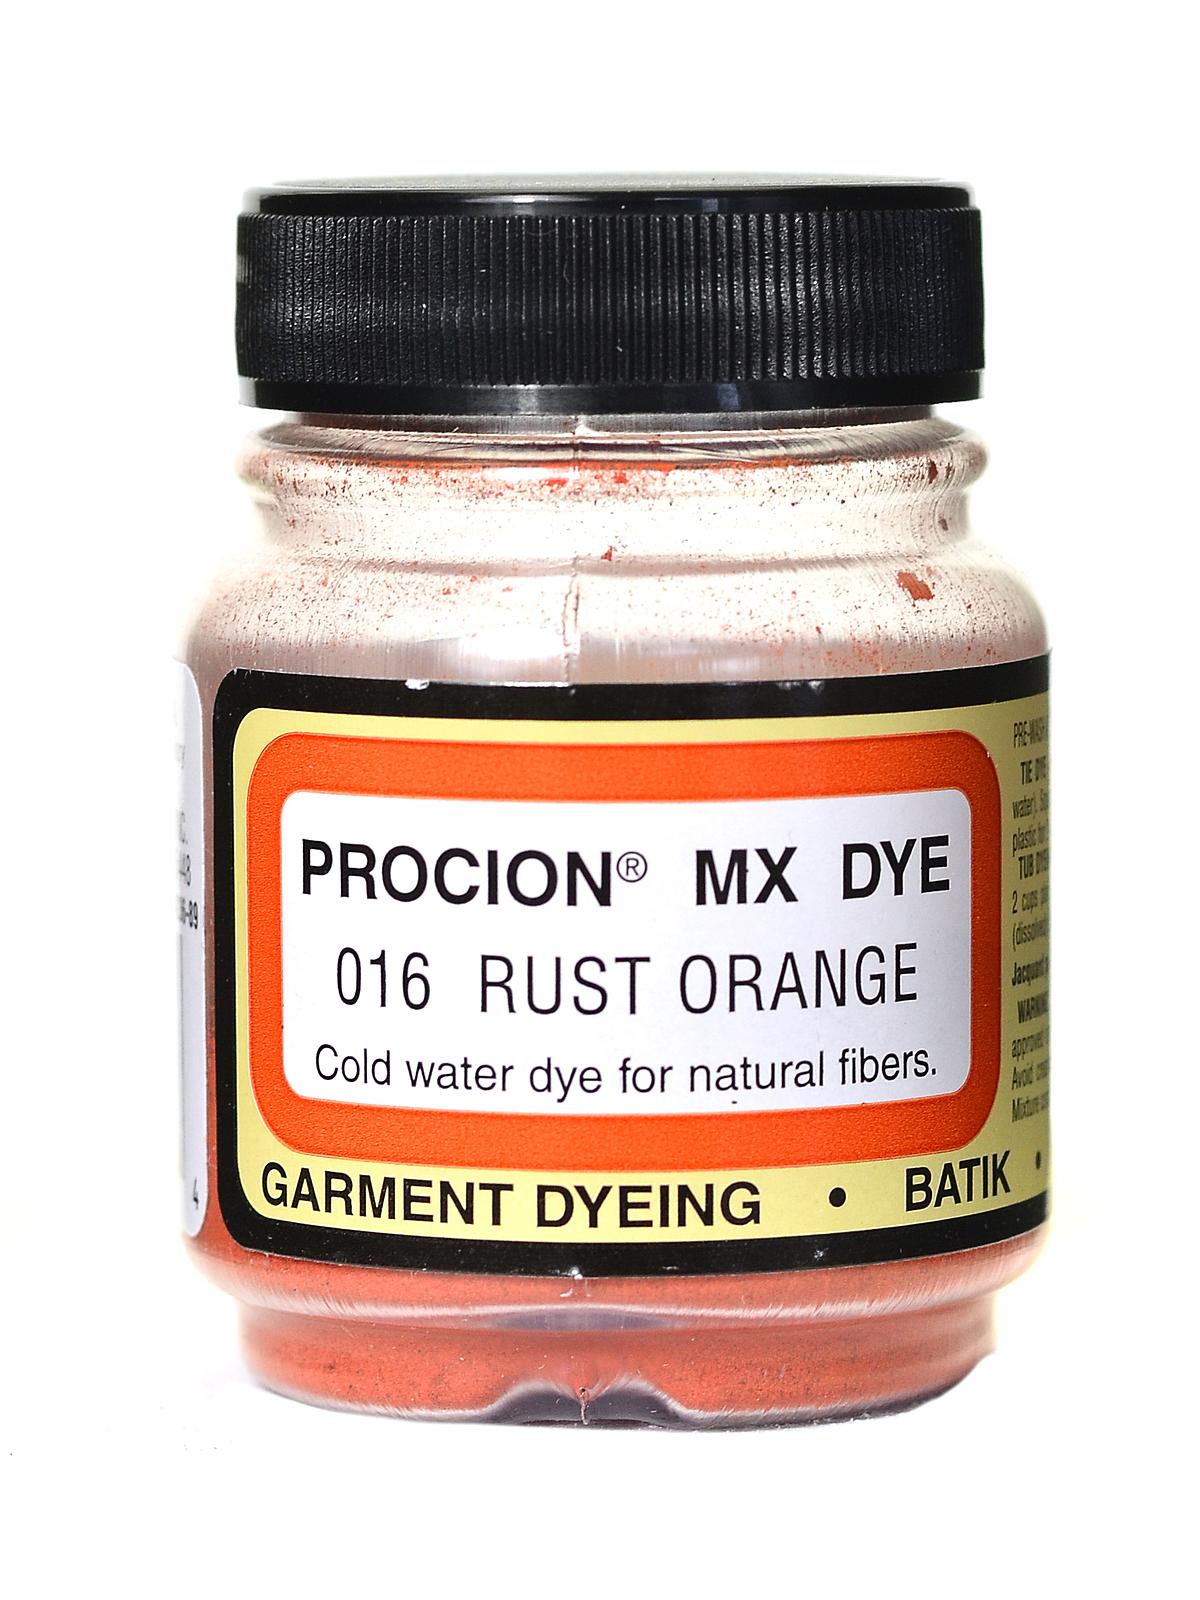 Jacquard Procion MX Fiber Reactive Dye brown Rose 